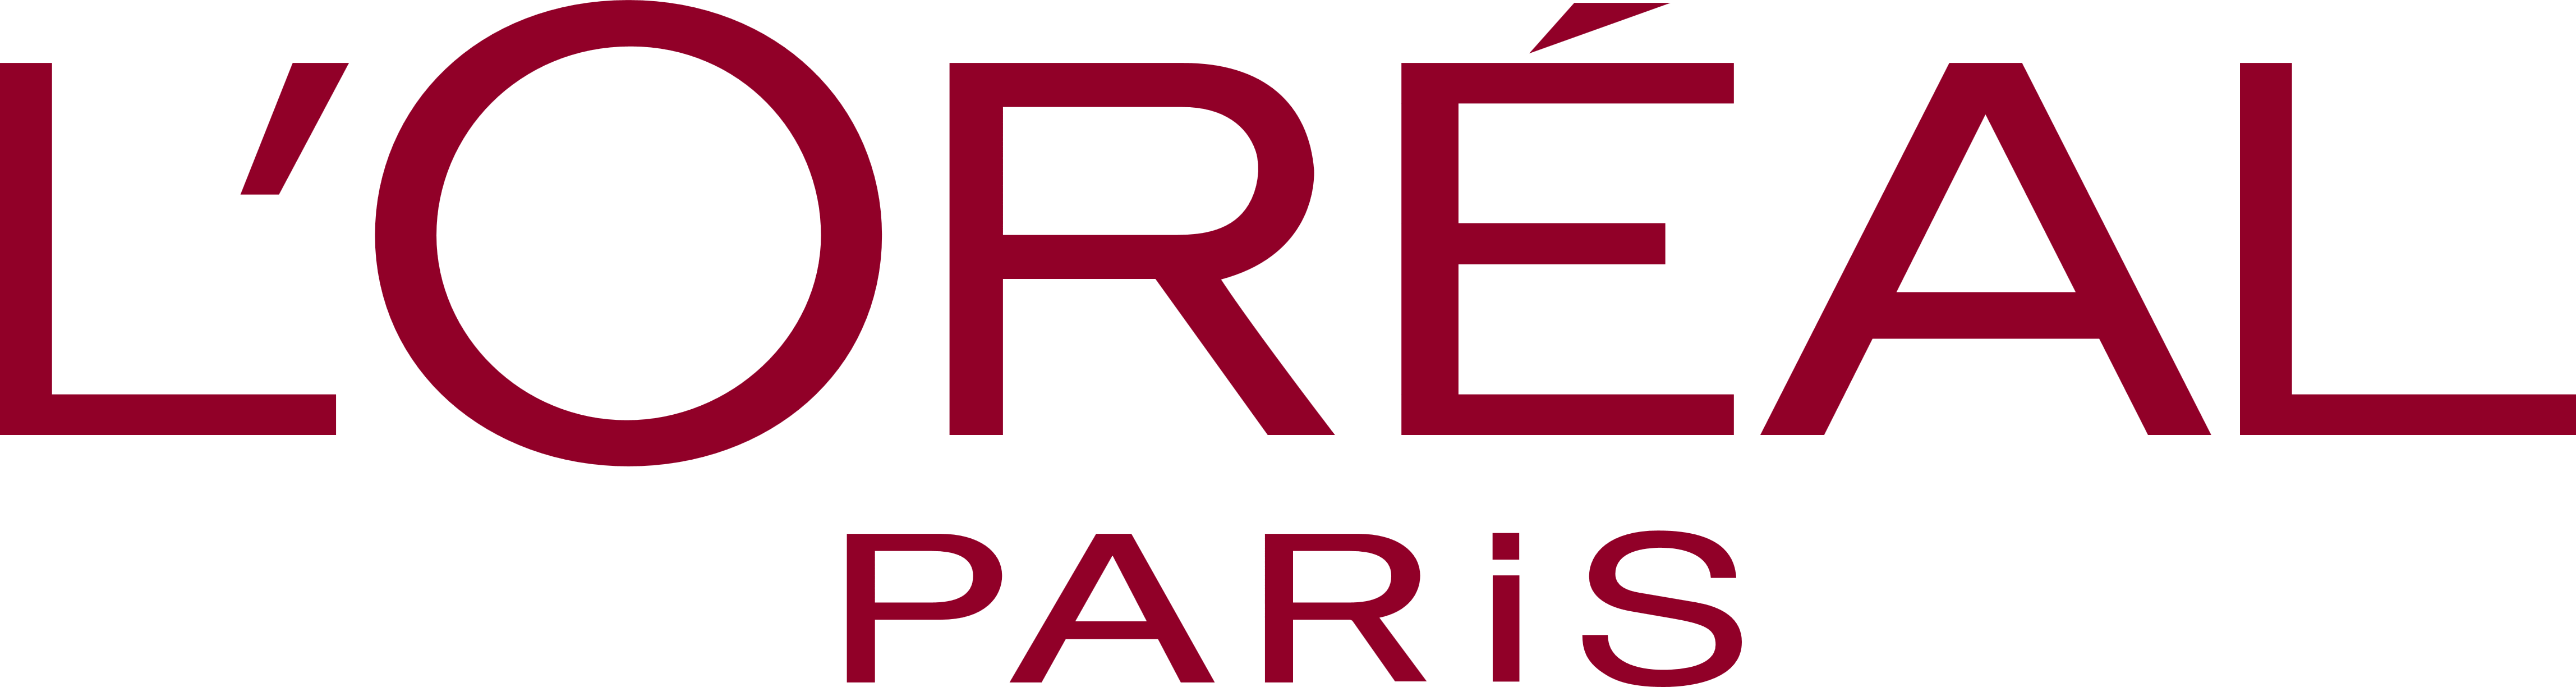 Lu0027Oréal Paris logo